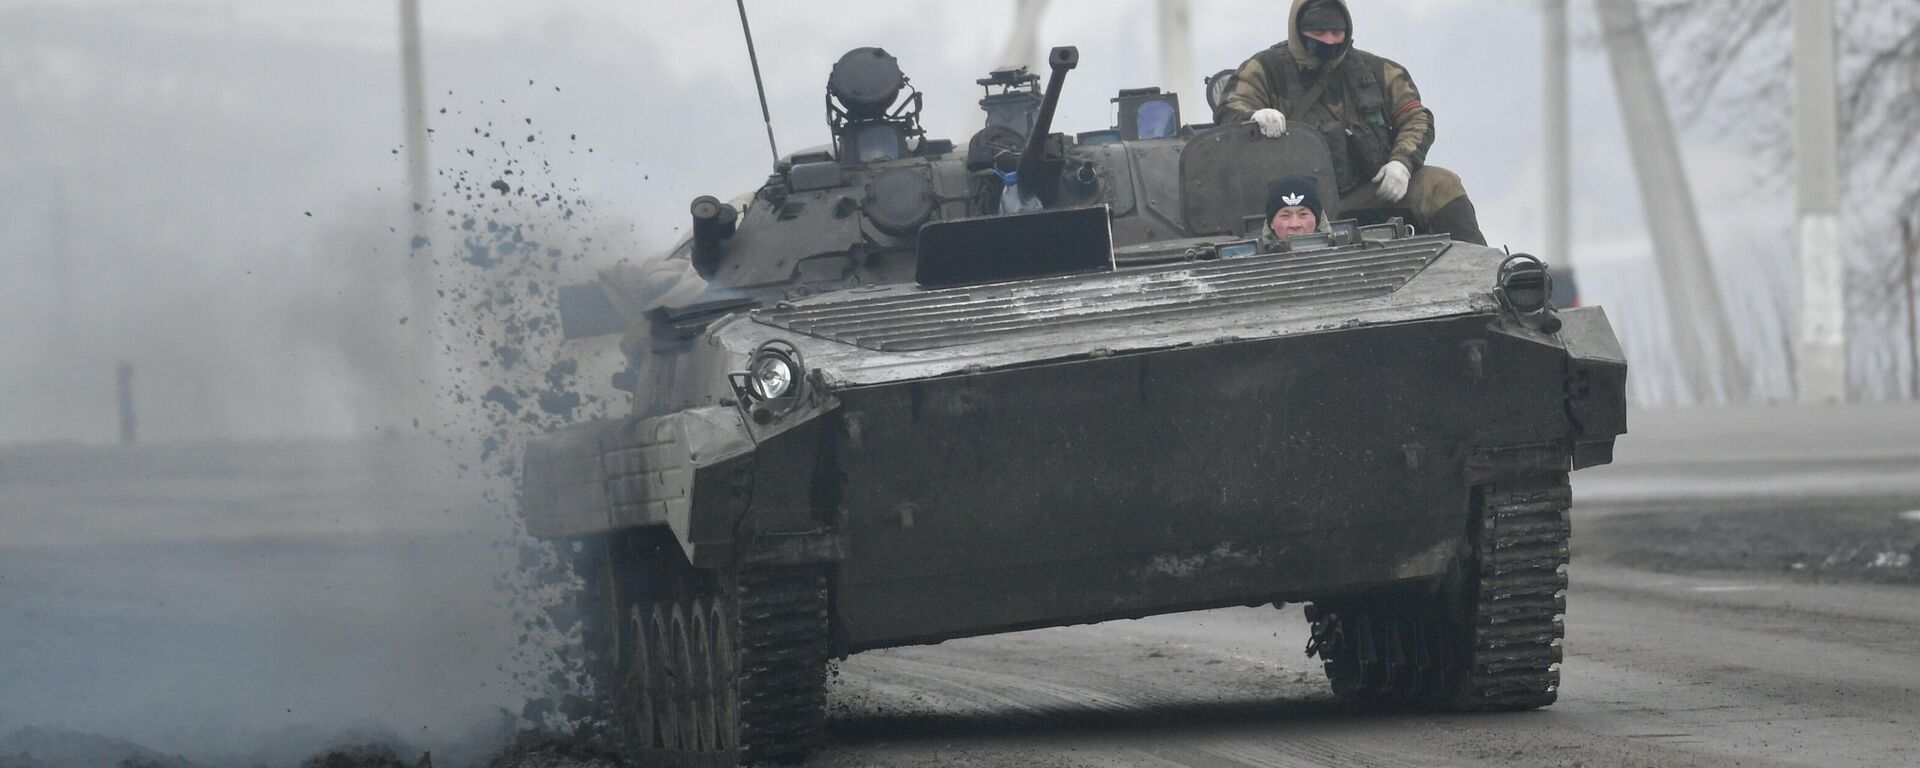 Боевая машина пехоты БМП-2 недалеко от границы с Украиной в Белгородской области, Россия - Sputnik Латвия, 1920, 03.03.2022